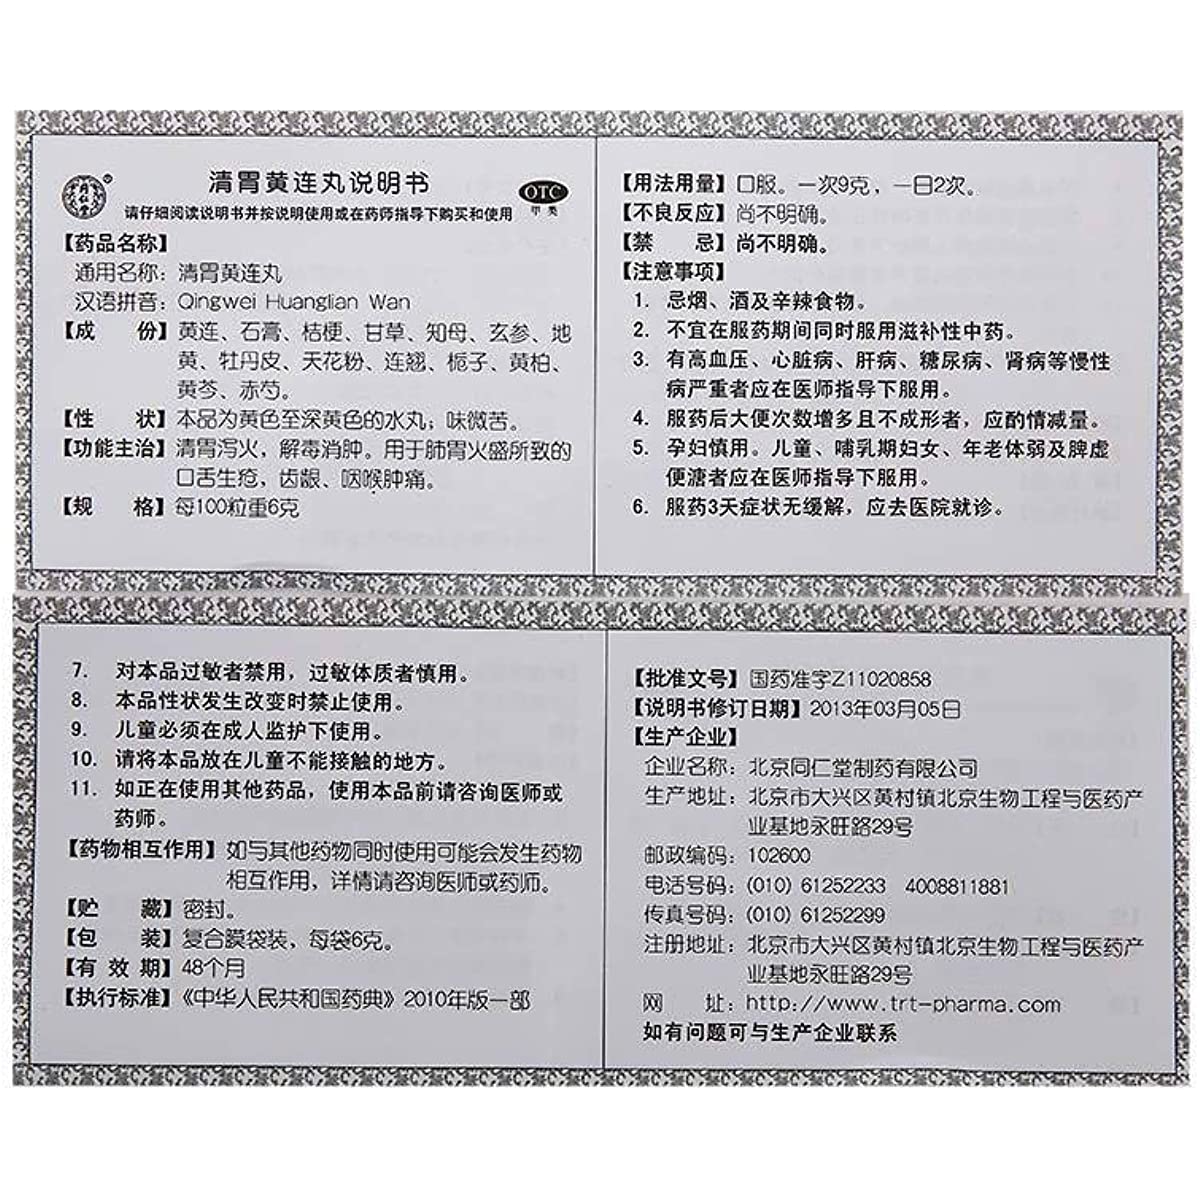 1 Box, TongrentangQingwei Huanglian Wan 6g*12 Bags / Box 清胃黄连丸